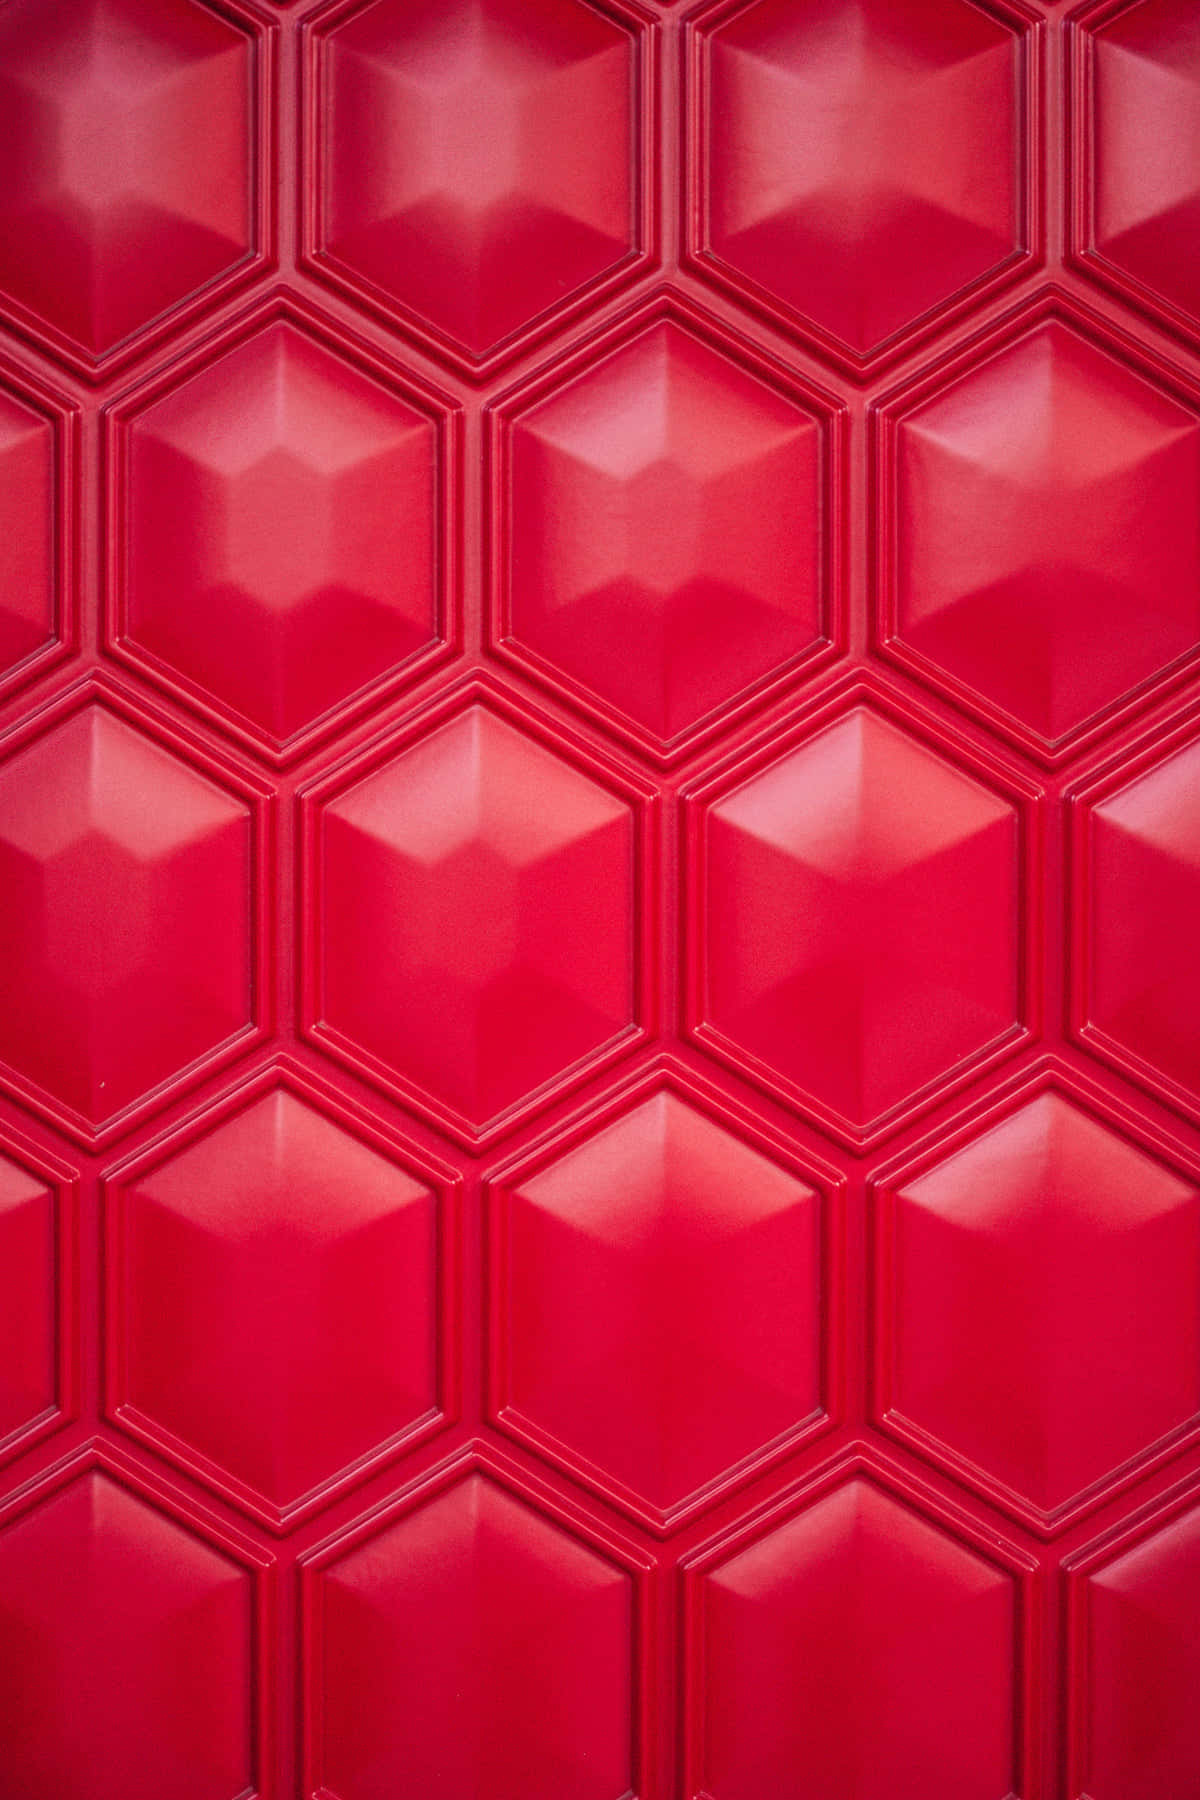 Rödhexagonal Brickvägg Bakgrund. Wallpaper